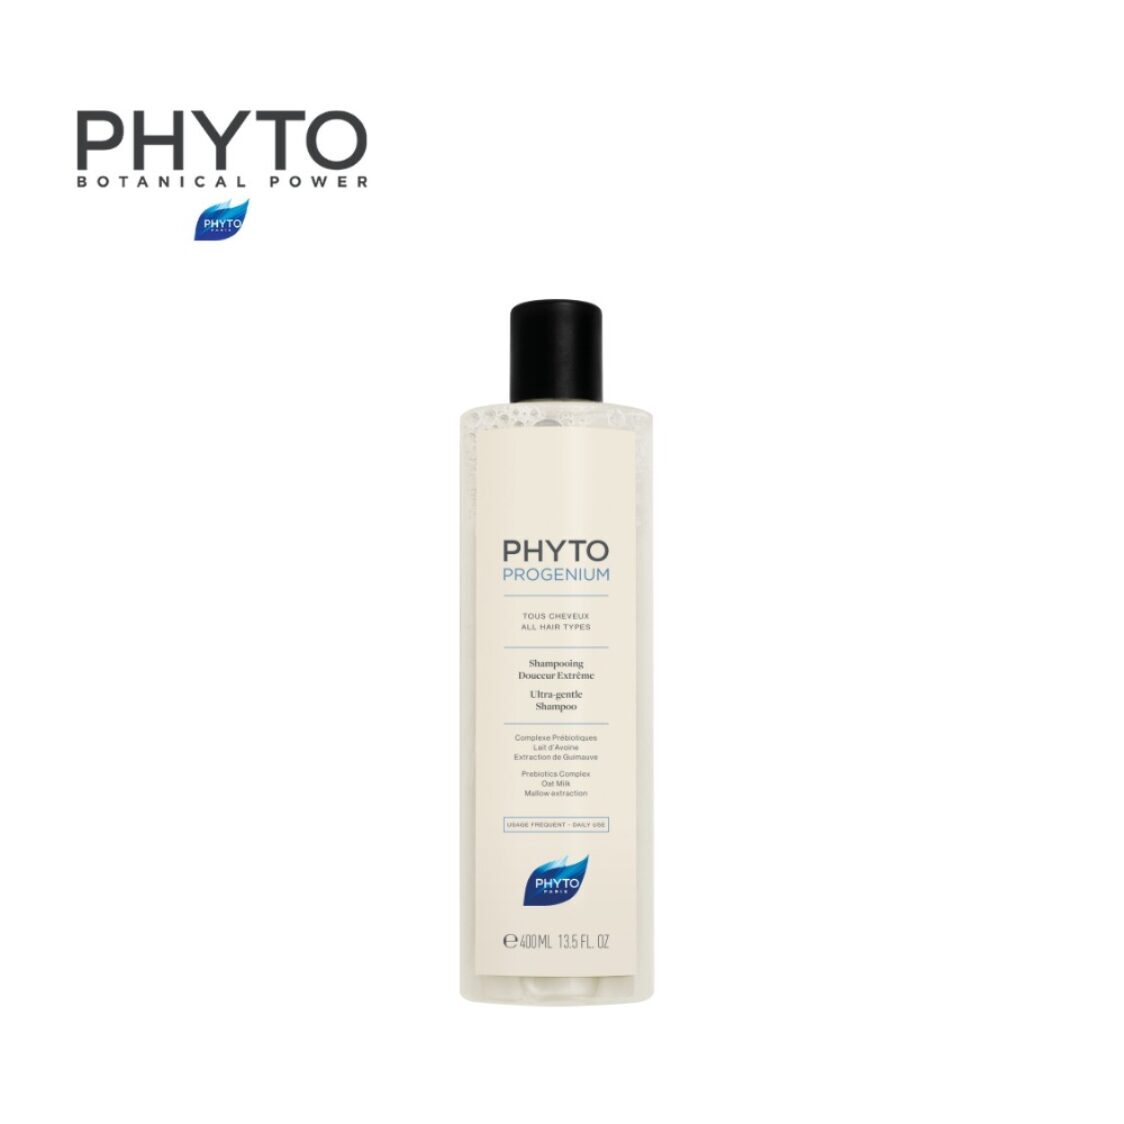 Phyto Phytoprogenium Ultra - Gentle Shampoo 400ml